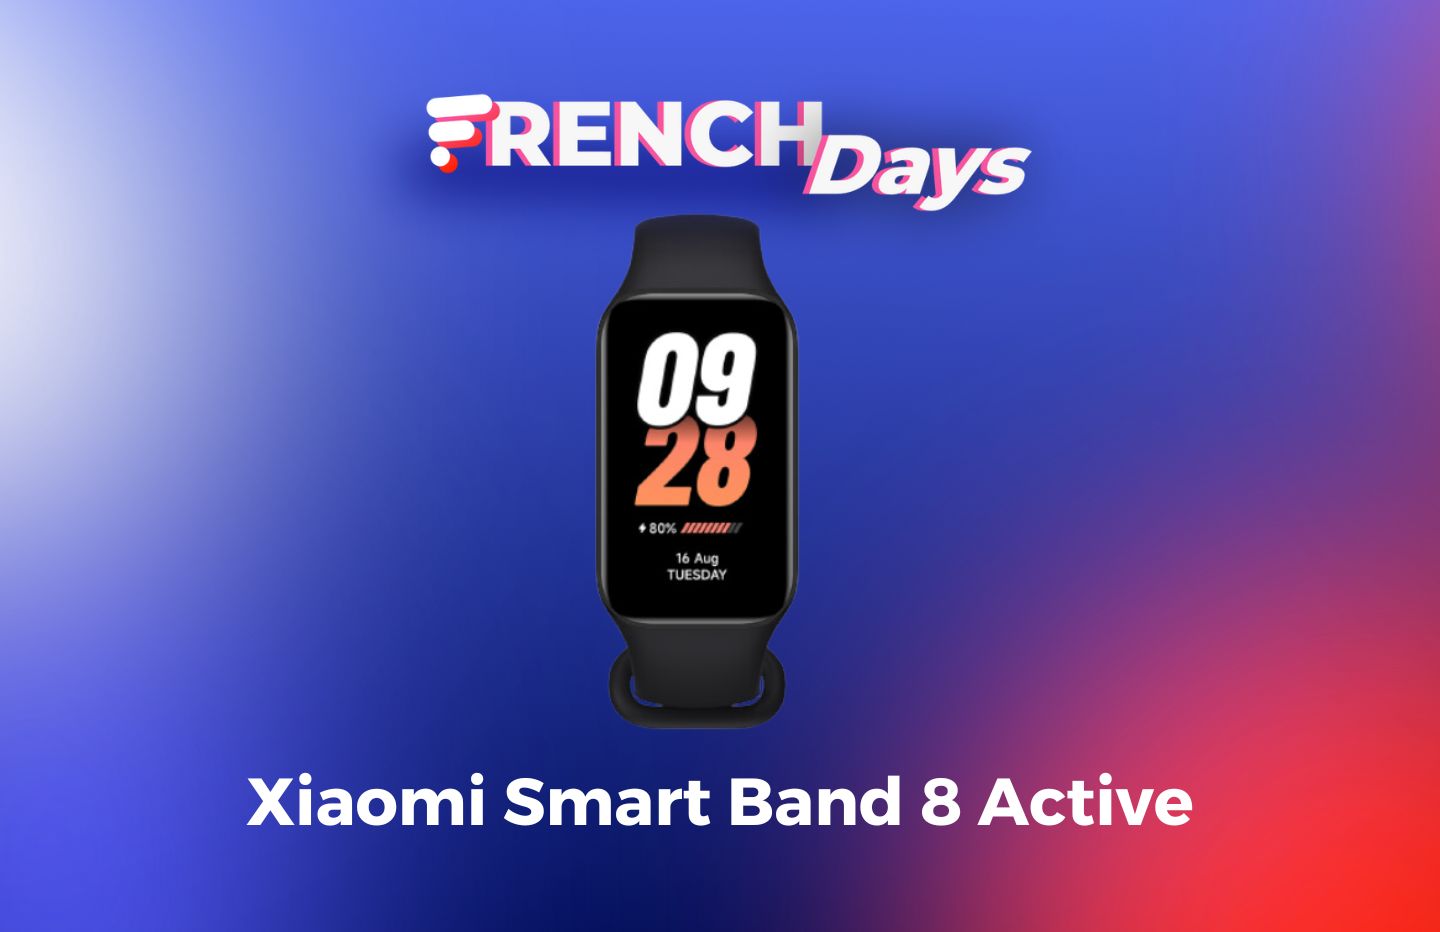 À peine dévoilé, le Xiaomi Smart Band 8 Active est déjà moins cher pendant  les French Days